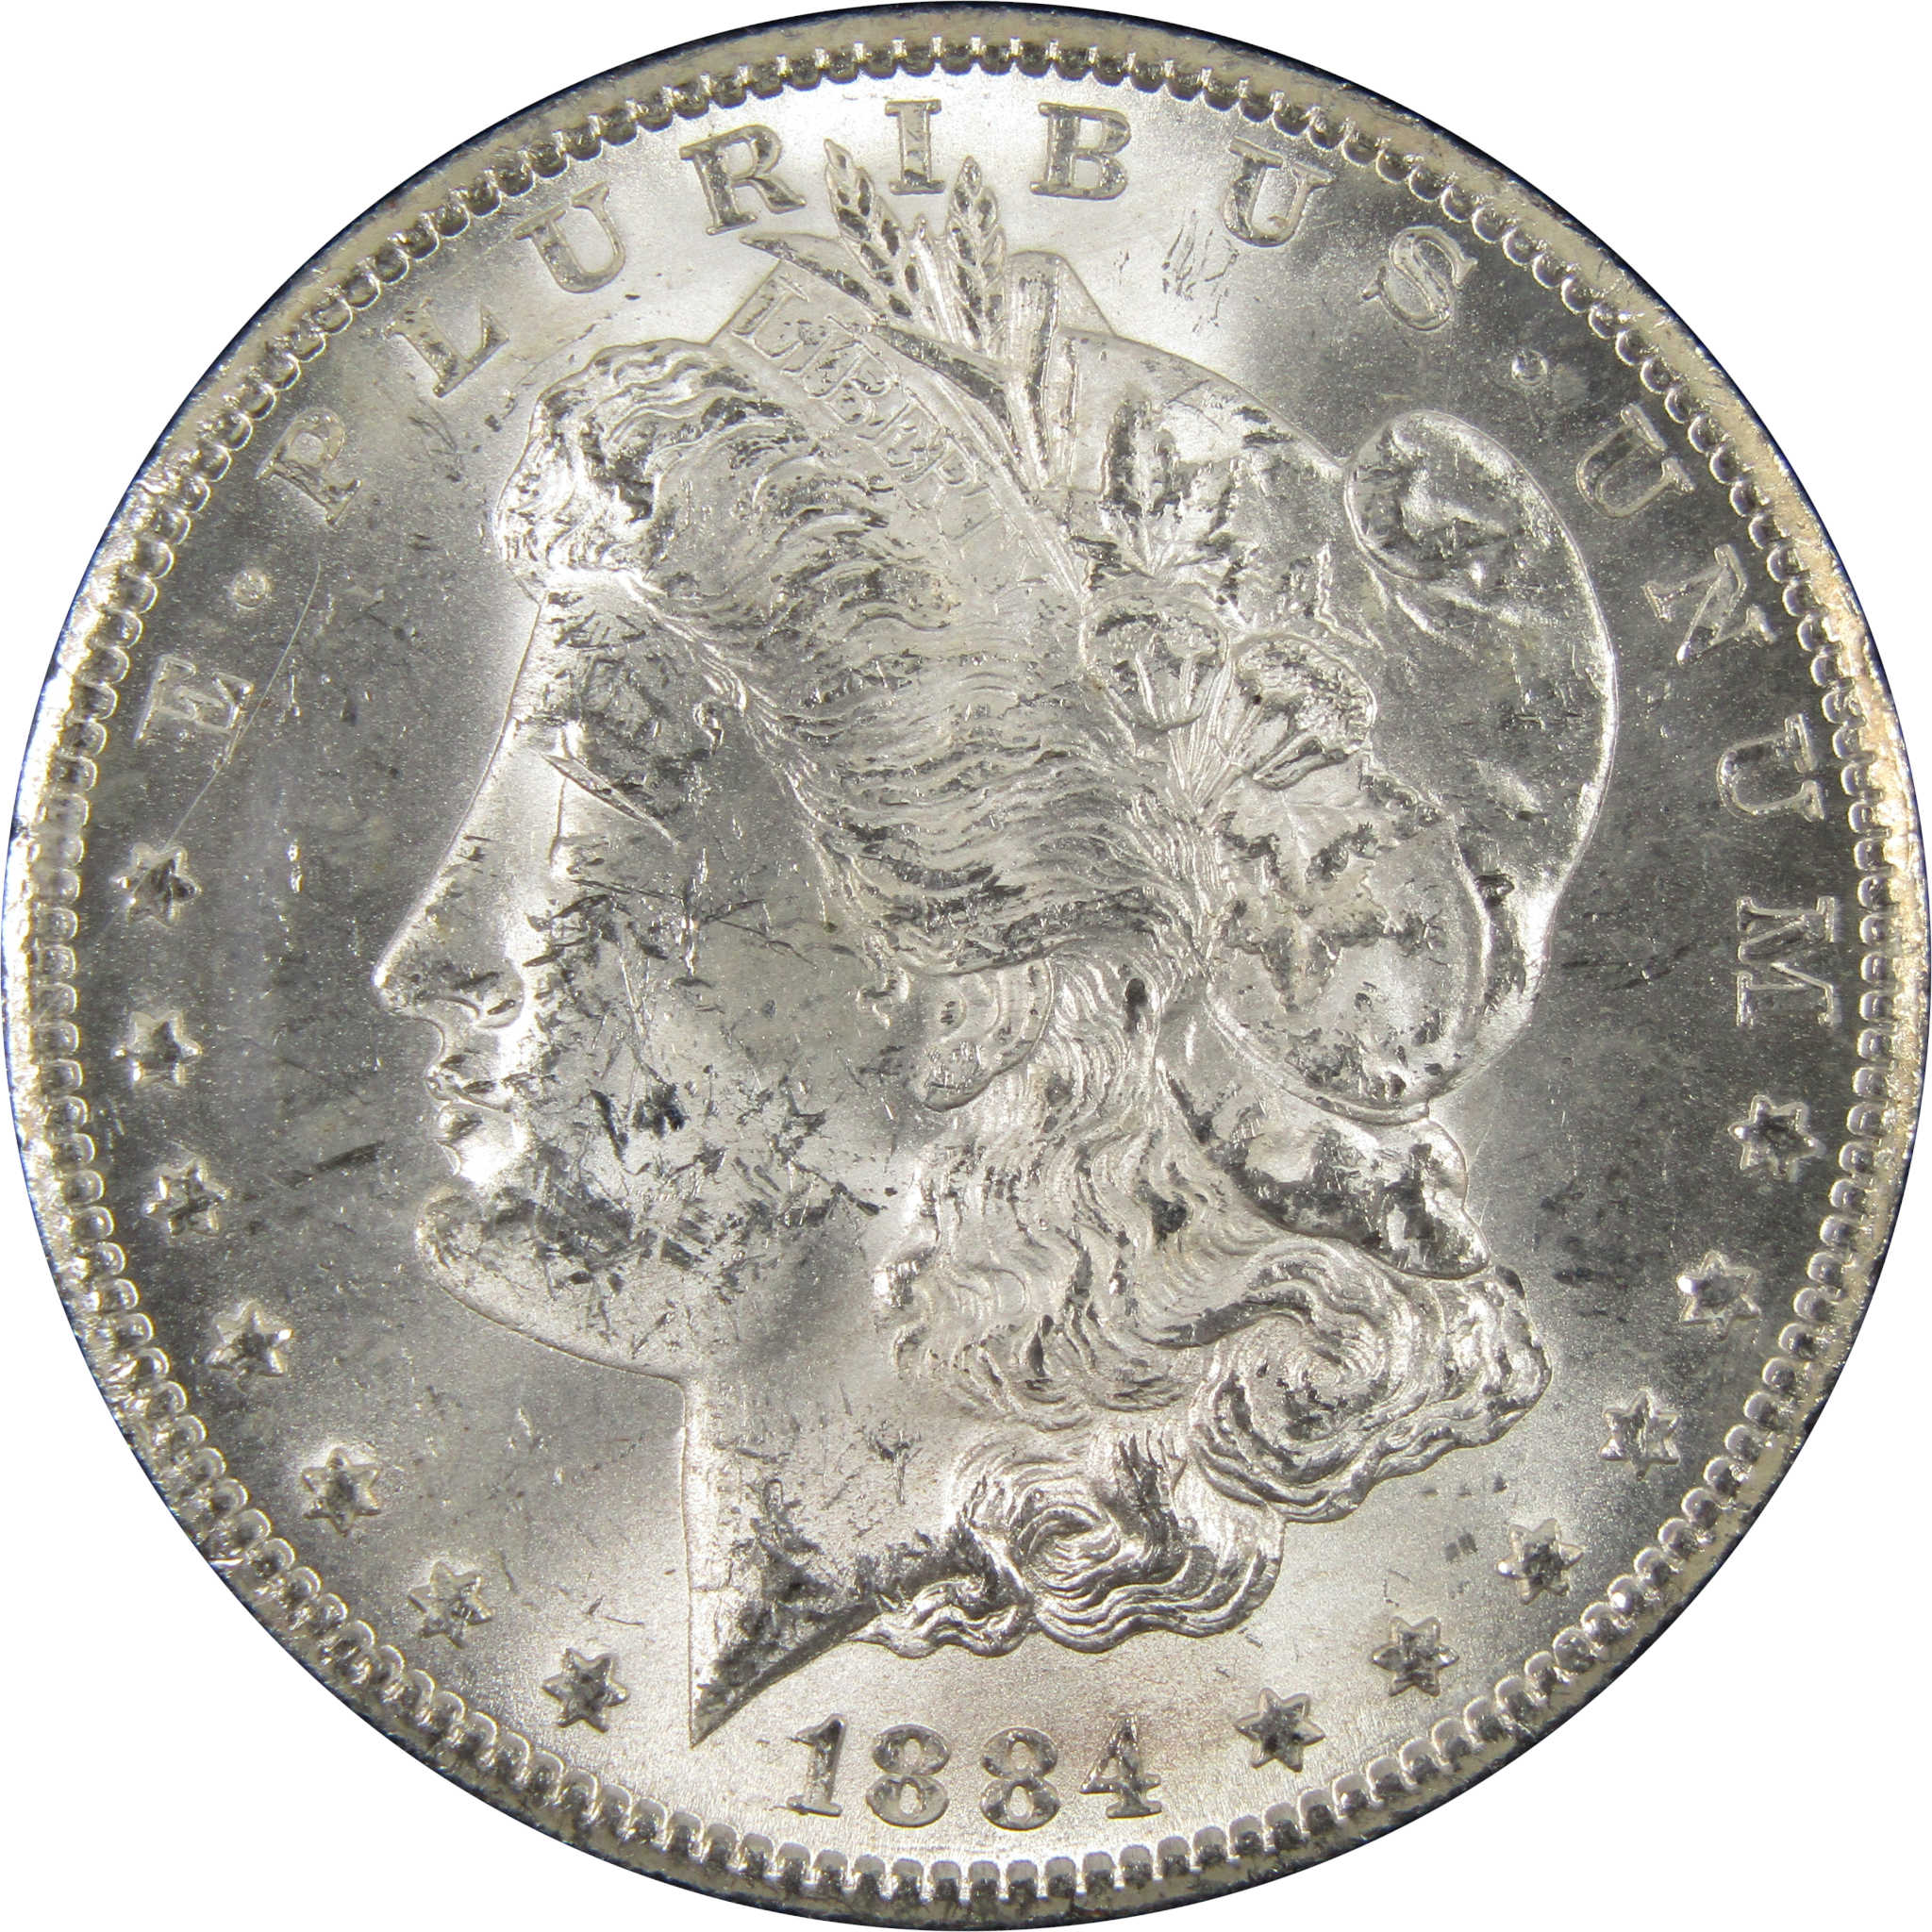 1884 CC GSA Morgan Dollar BU Uncirculated Silver $1 Coin SKU:I9297 - Morgan coin - Morgan silver dollar - Morgan silver dollar for sale - Profile Coins &amp; Collectibles